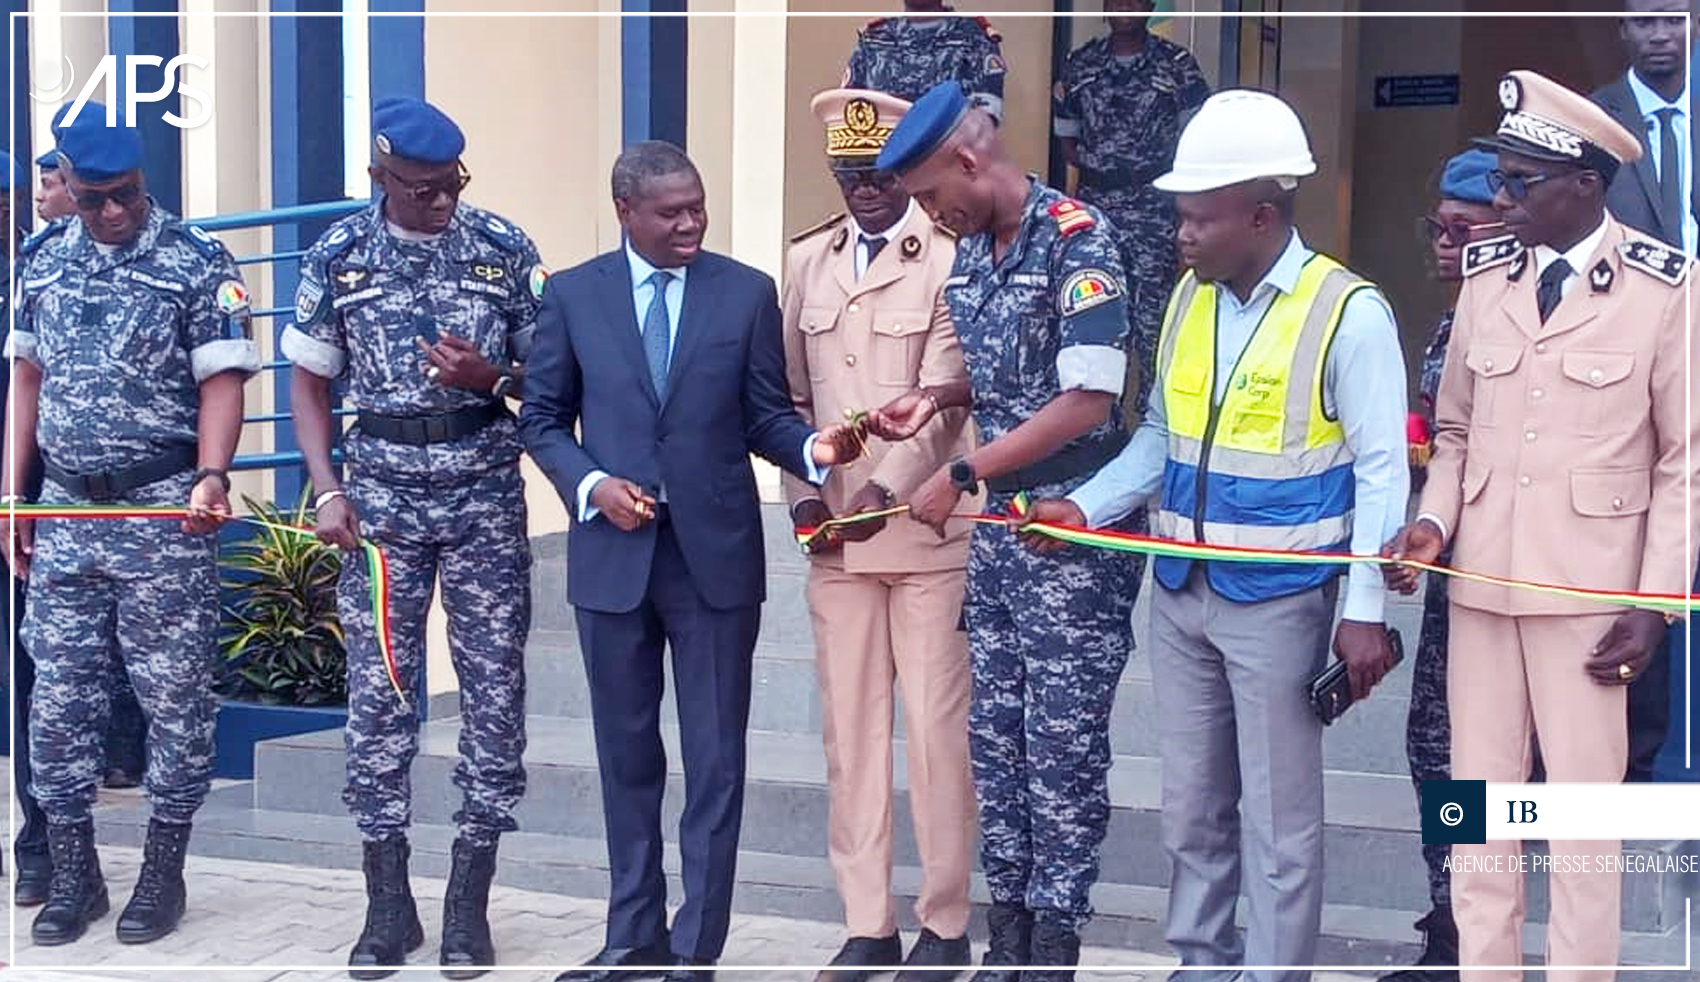 Gendarmerie nationale / LGI : Oumar Youm a inauguré 4 immeubles R+3 et un centre de santé.